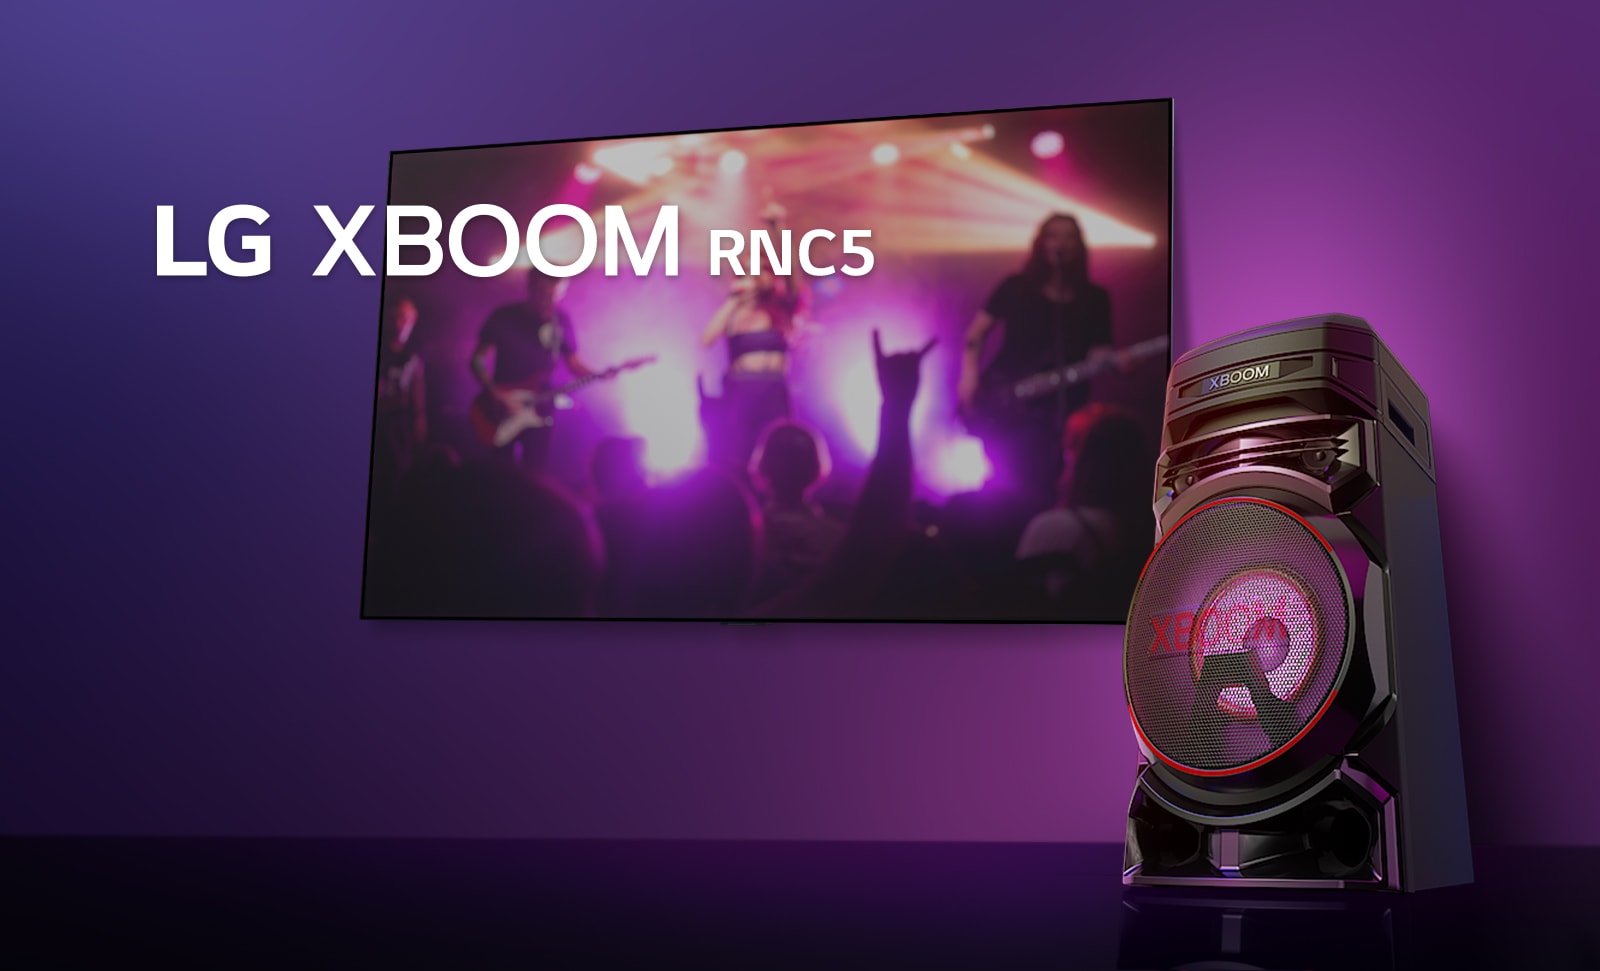 Χαμηλή άποψη της δεξιάς πλευράς του LG XBOOM RNC5 υπό χαμηλή γωνία, σε μωβ φόντο.  Το φως XBOOM είναι επίσης μωβ. Σε μια οθόνη τηλεόρασης βλέπουμε πλάνο από μια συναυλία.